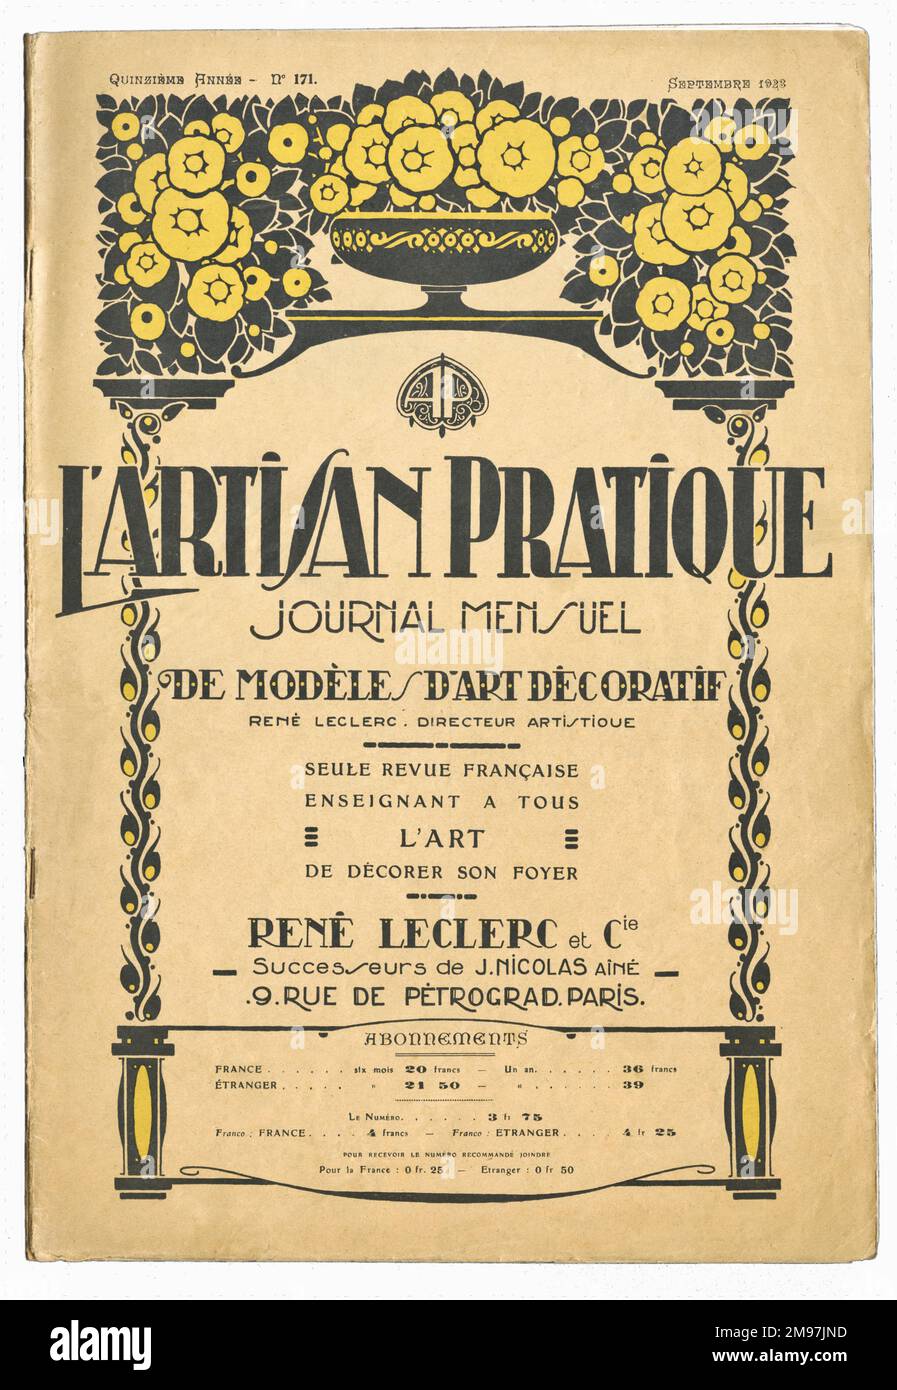 Couverture pour un magazine d'art décoratif français, l'Artisan pratique, septembre 1923. Banque D'Images